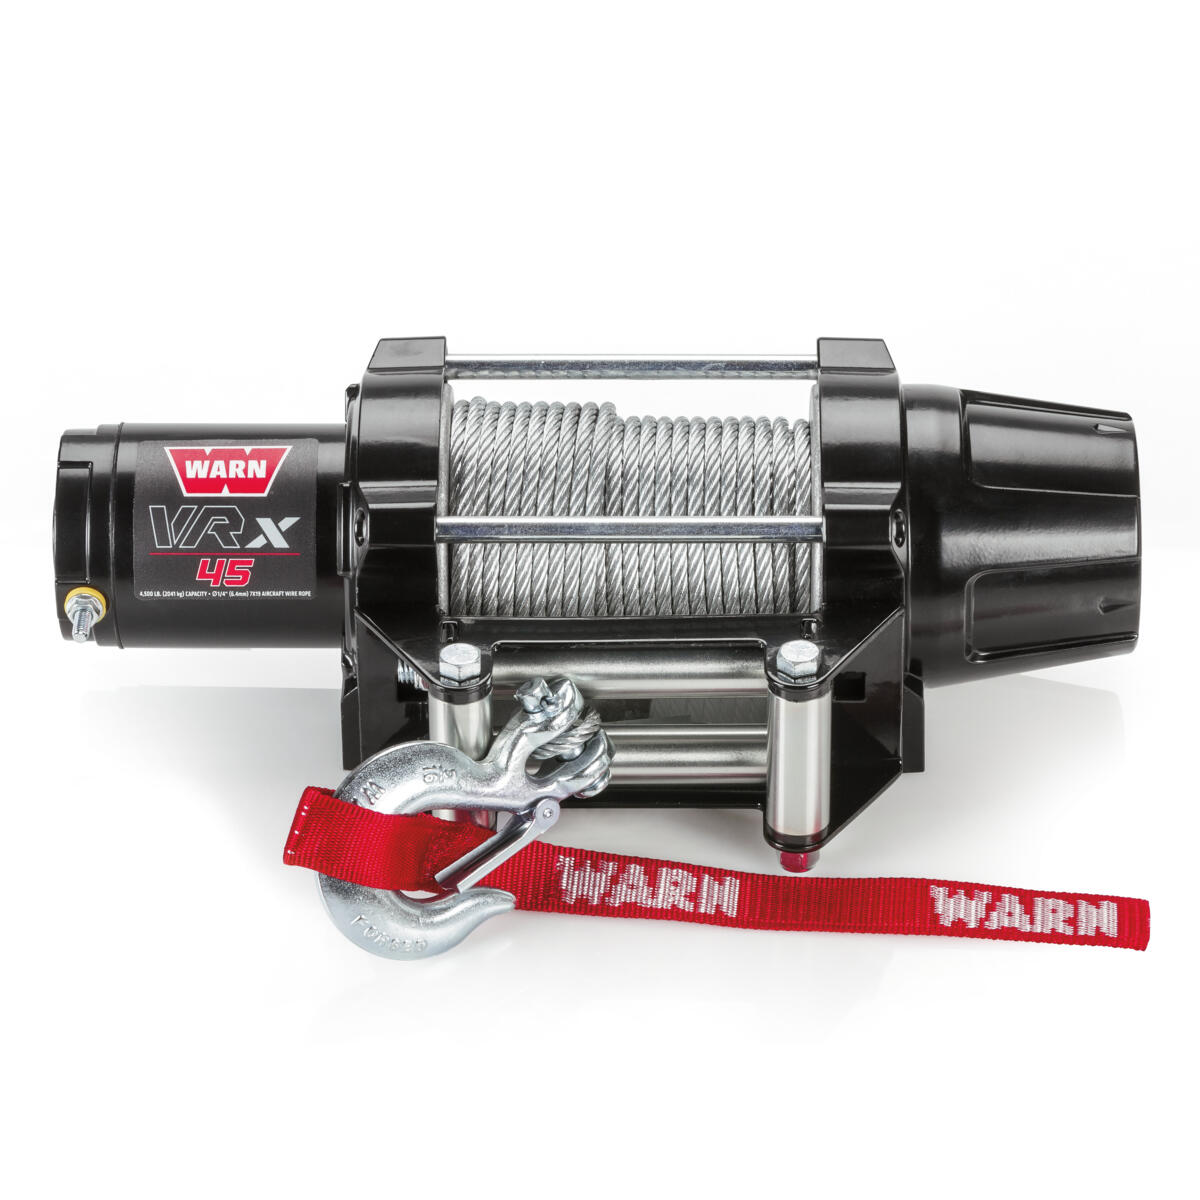 Die Metallkonstruktion der WARN® VRX-Winde mit 15,2 m Stahlseil enthält eine neue Kupplung, die in Anlehnung an das WARN® 4WD-Nabensicherungsdesign entwickelt wurde.